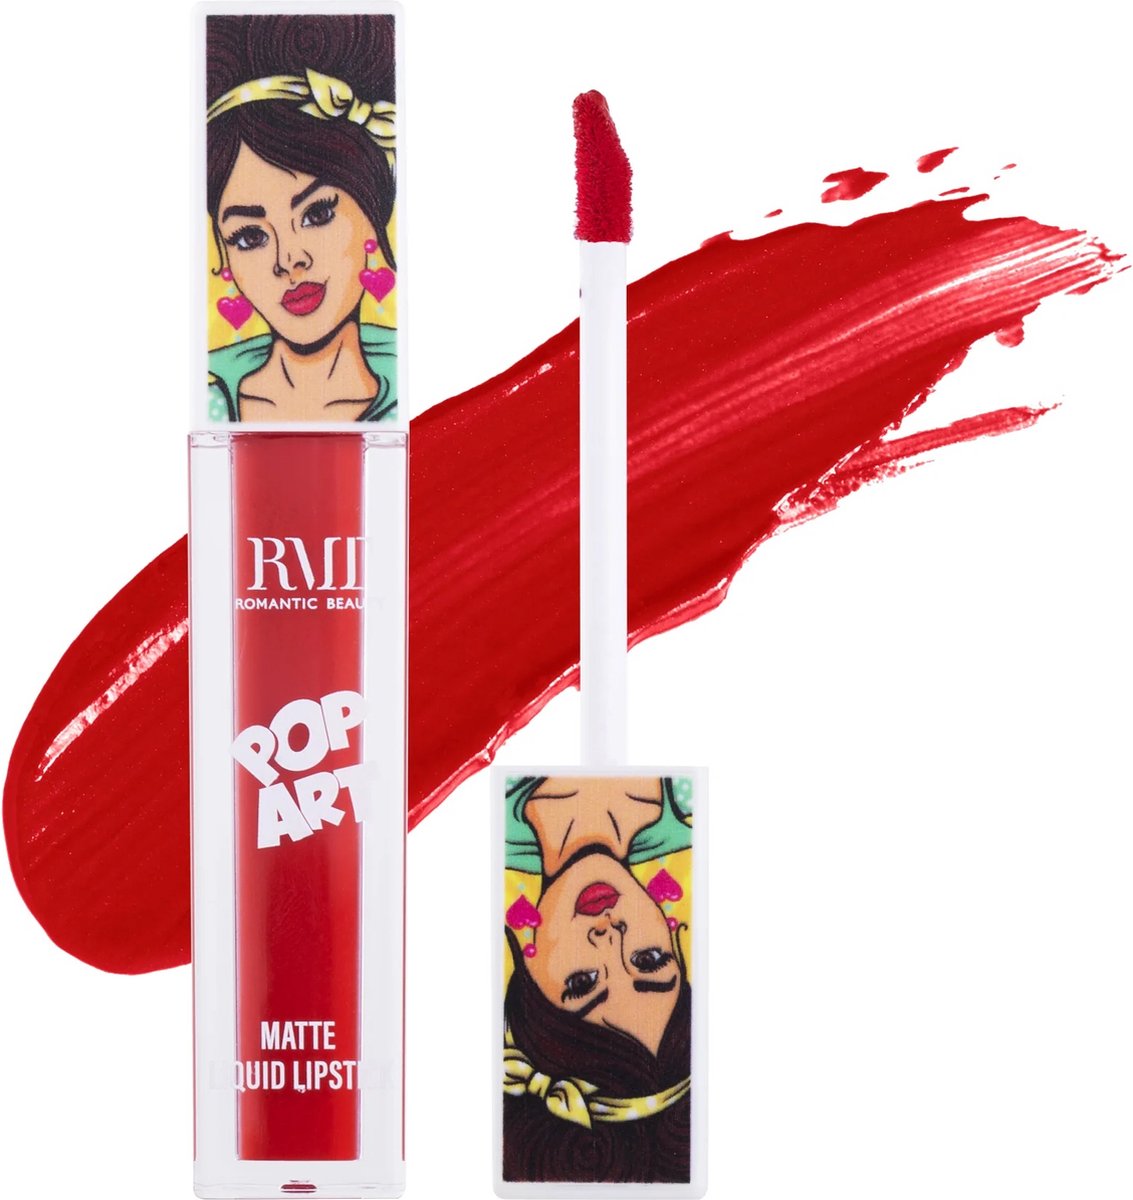 Romantic Beauty - Pop Art - Matte - Liquid Lipstick - 05 - Rood - Lippenstift - 6.2 g